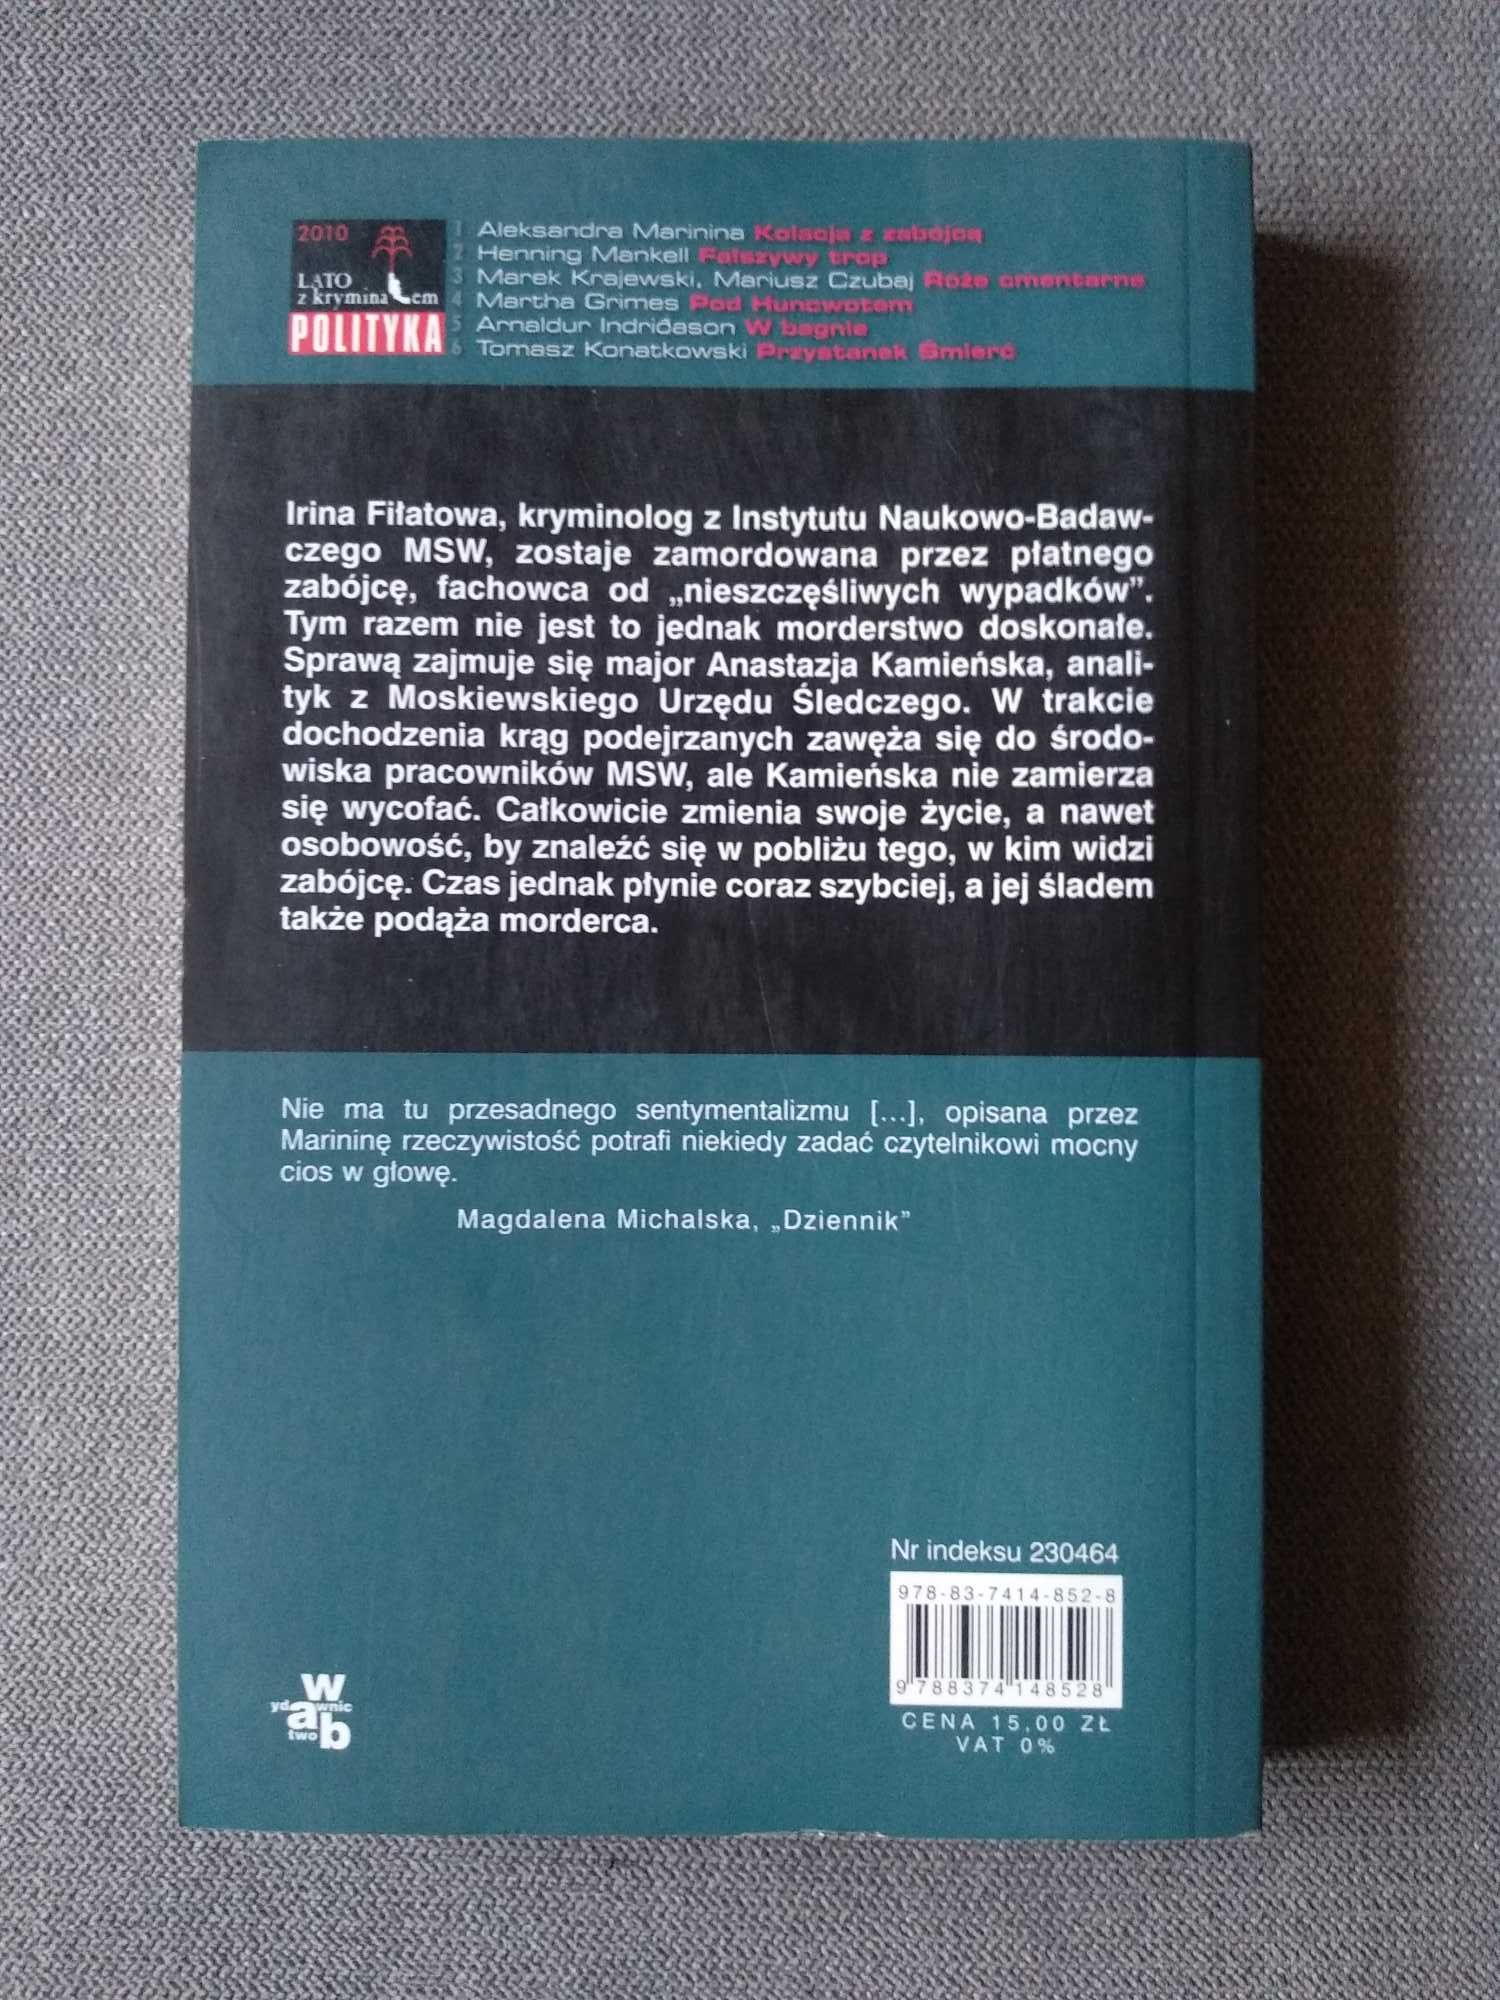 Książka "Kolacja z zabójcą" - Aleksandra Marinina